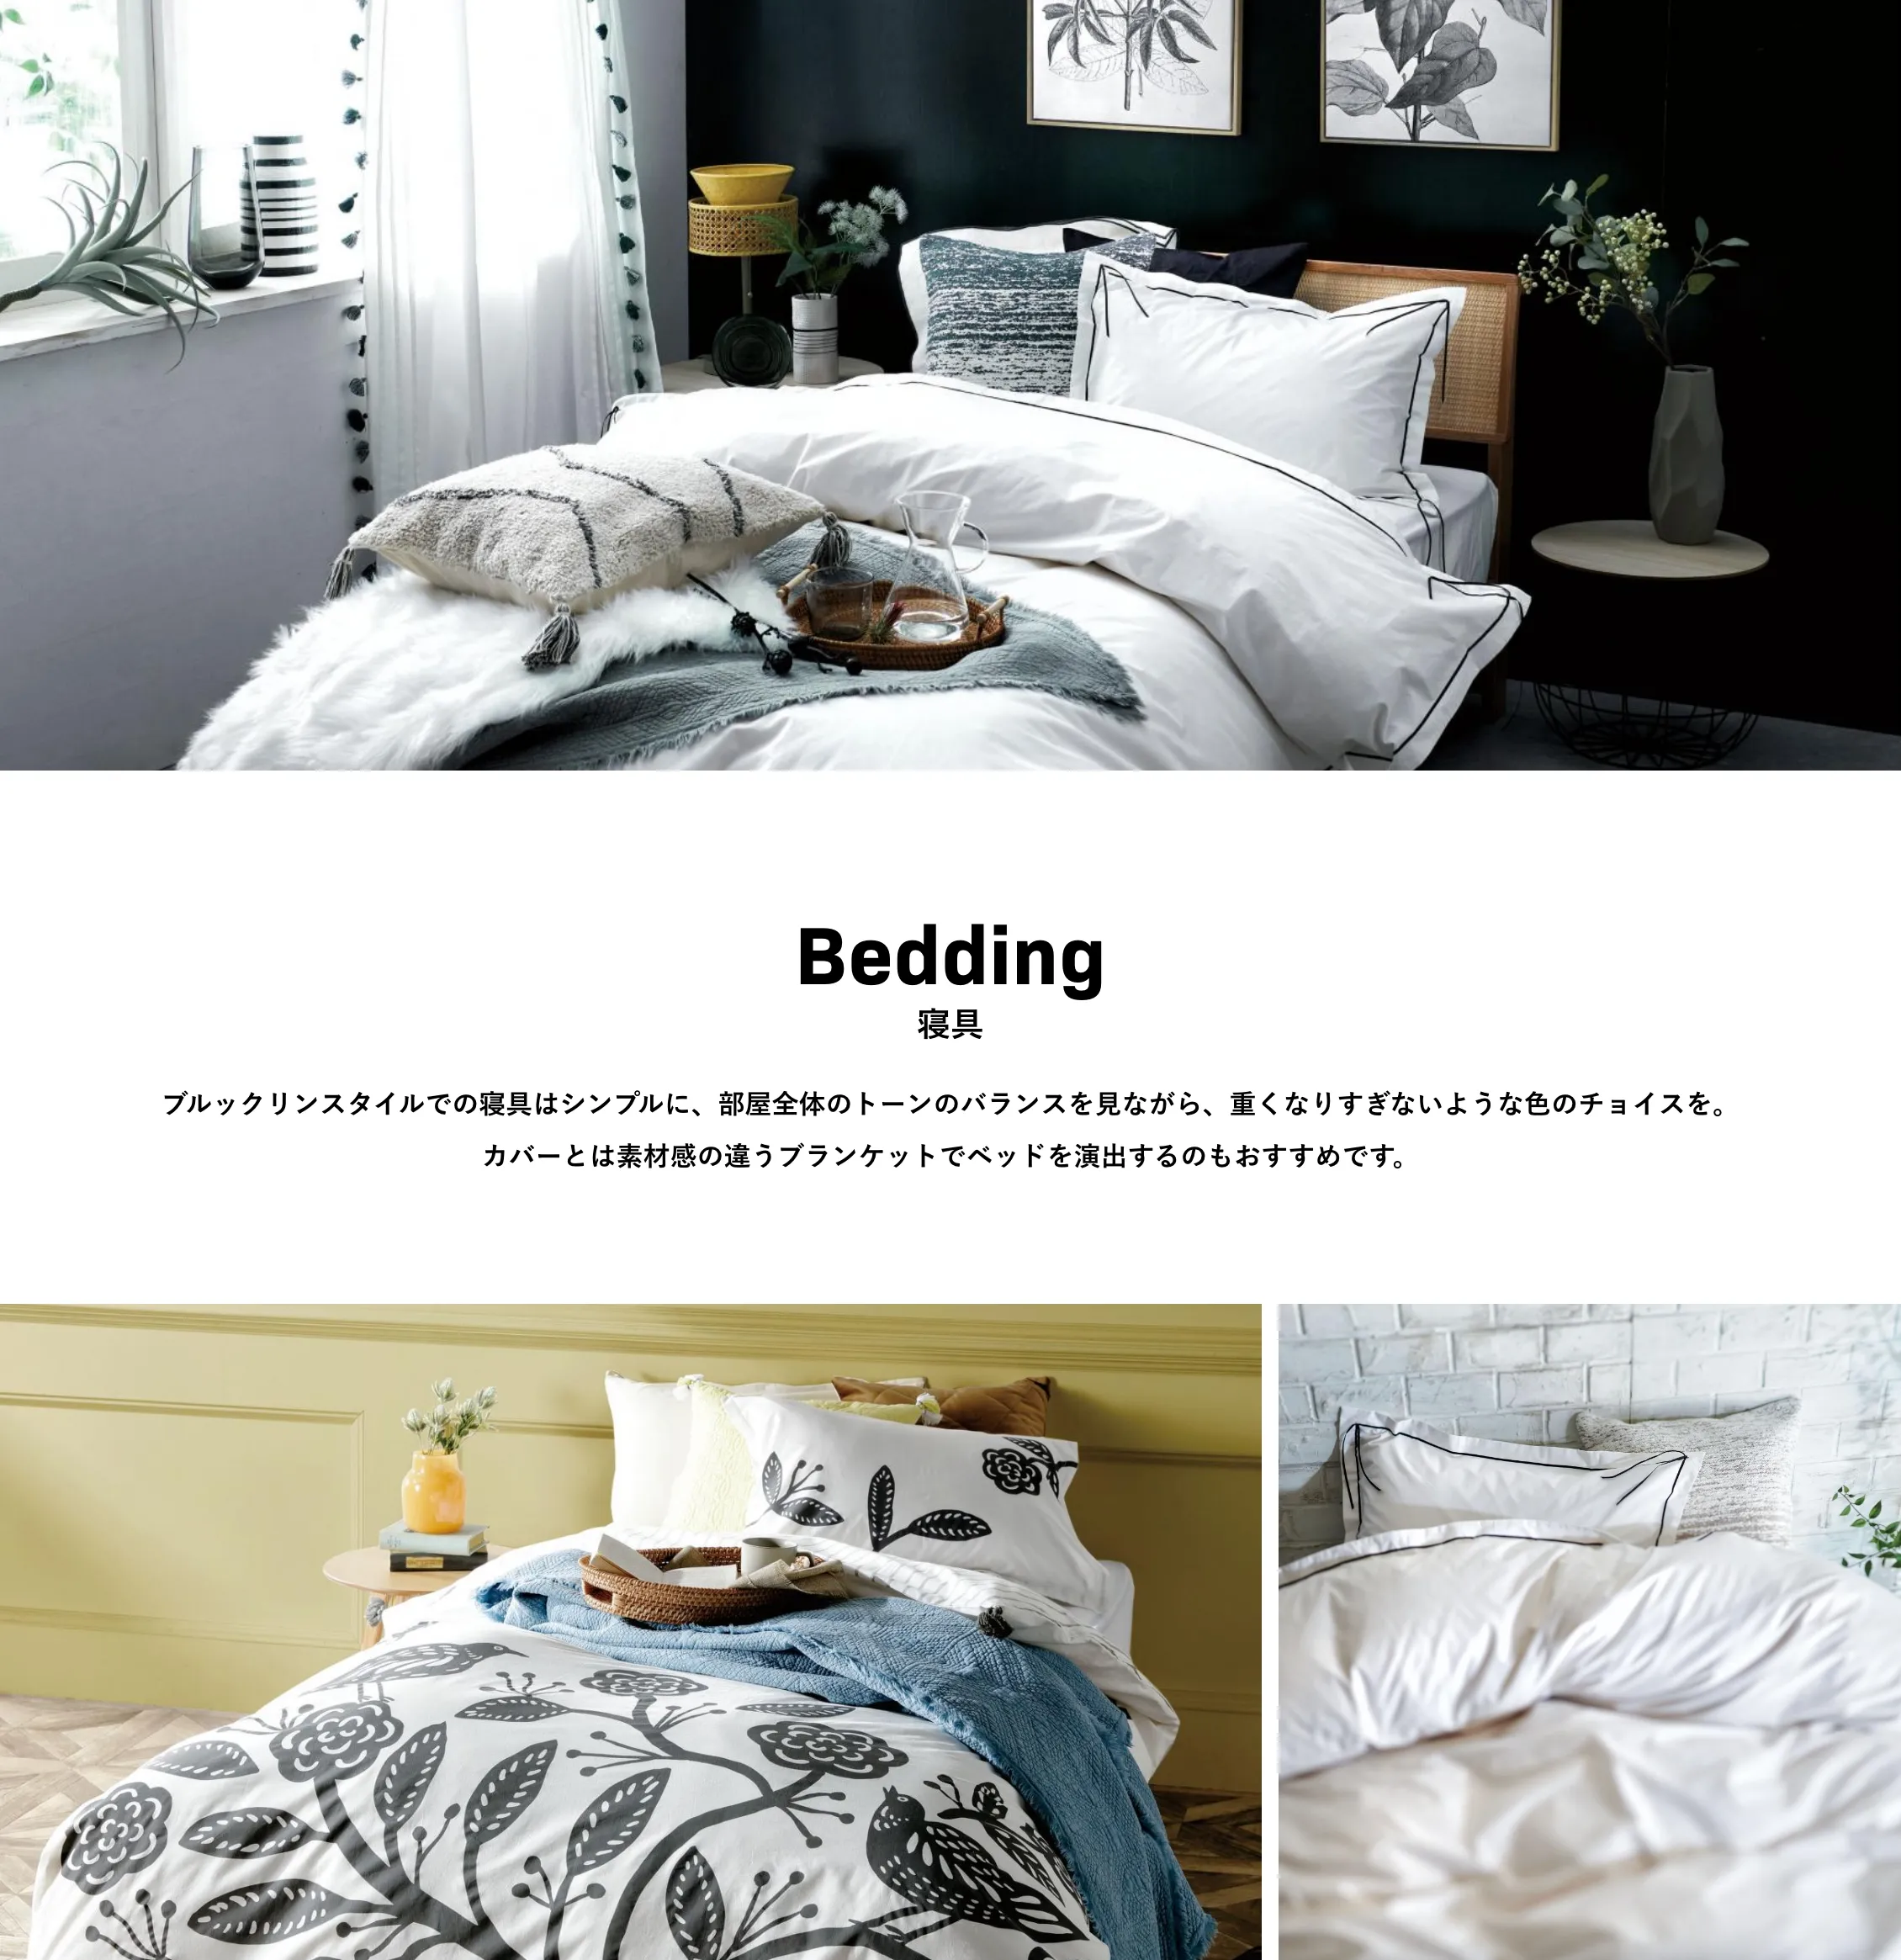 Bedding 寝具 ブルックリンスタイルでの寝具はシンプルに、部屋全体のトーンのバランスを見ながら、重くなりすぎないような色のチョイスを。カバーとは素材感の違うブランケットでベッドを演出するのもおすすめです。